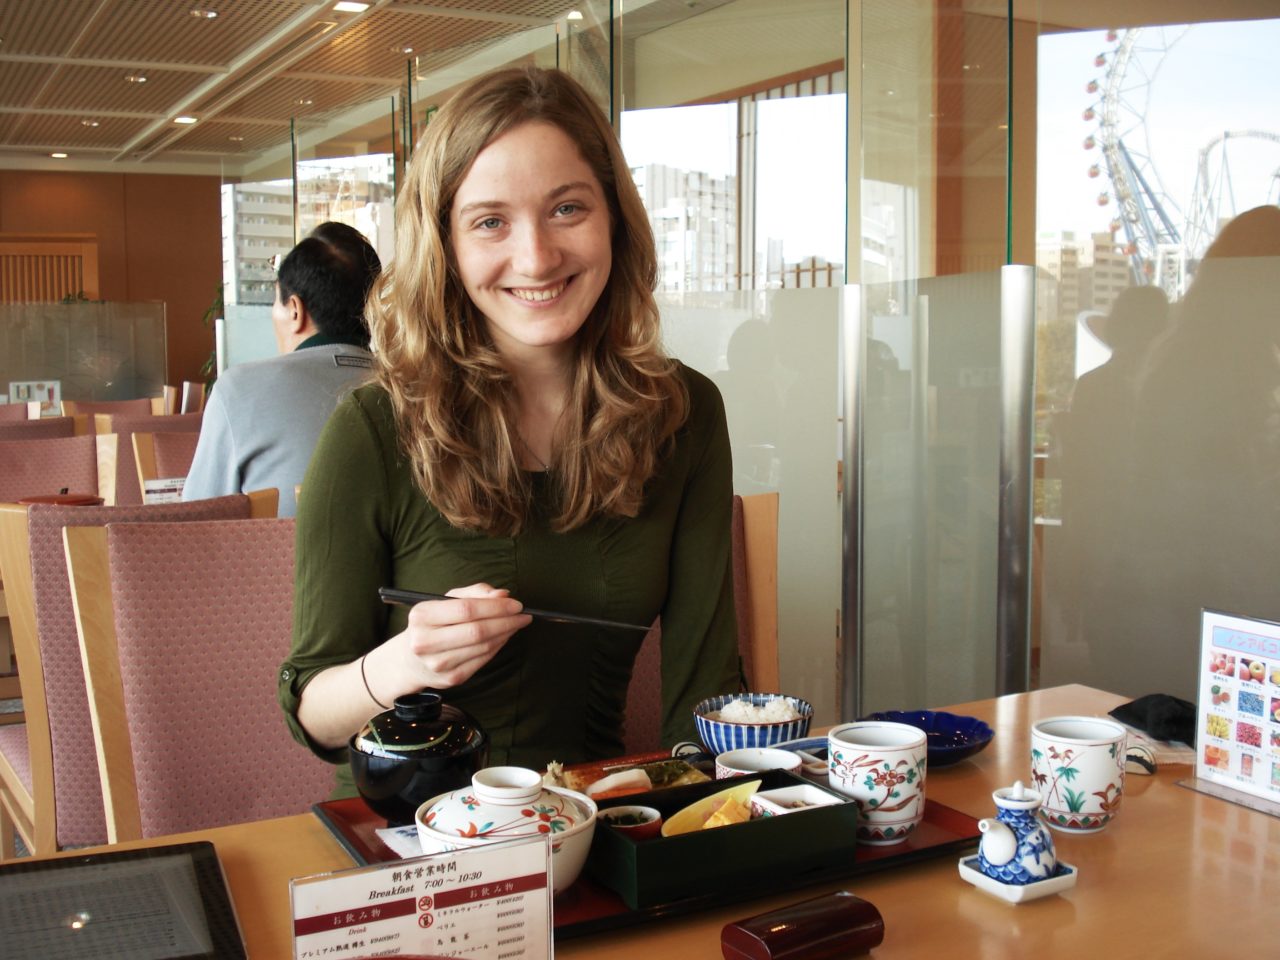 Technion : Japanese Breakfast in Campus Restaurant